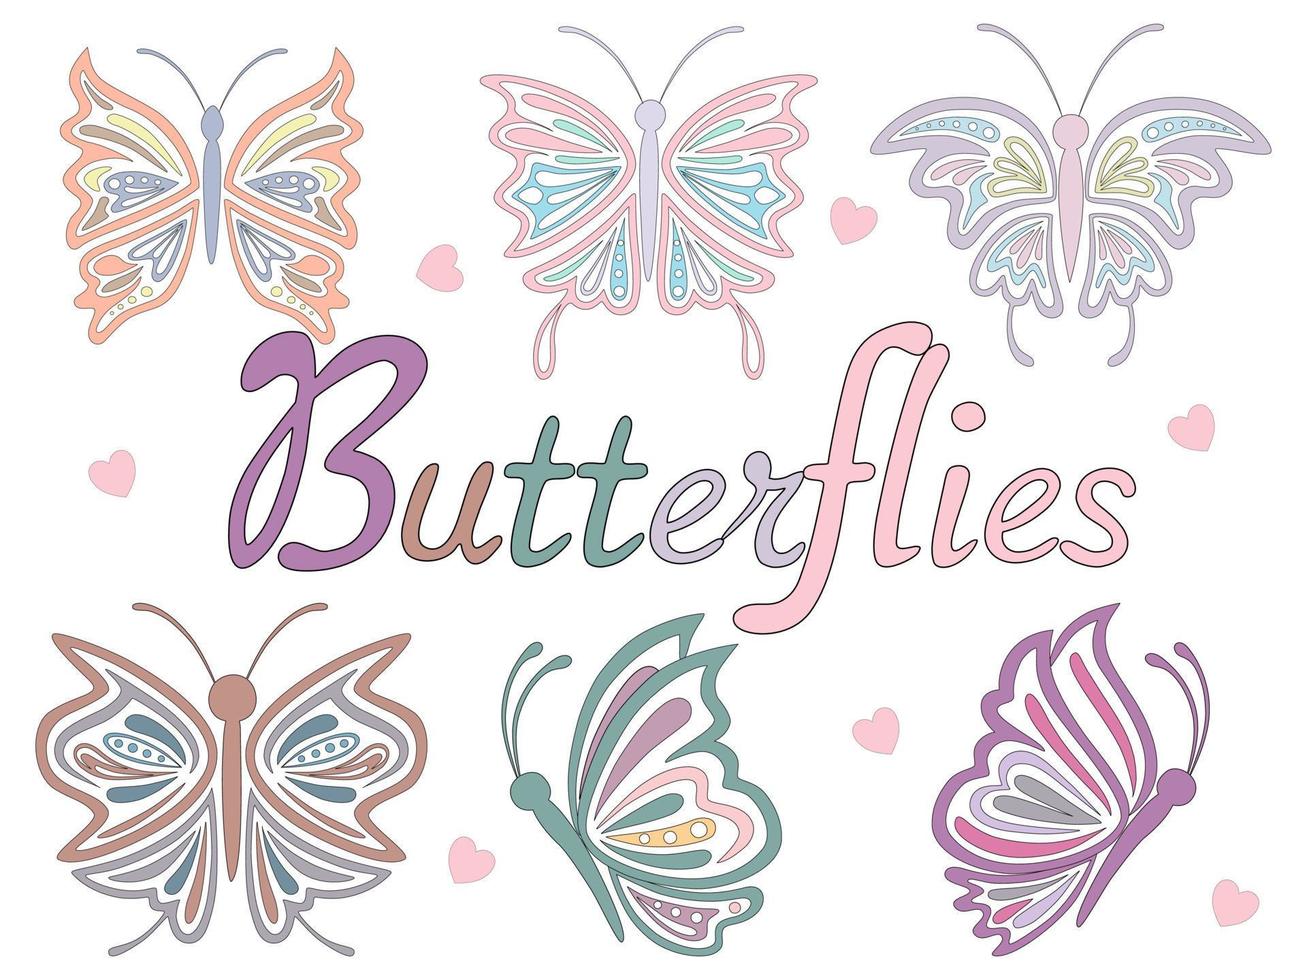 uppsättning fjärilar i pastellfärger designade i doodle-stil vektor